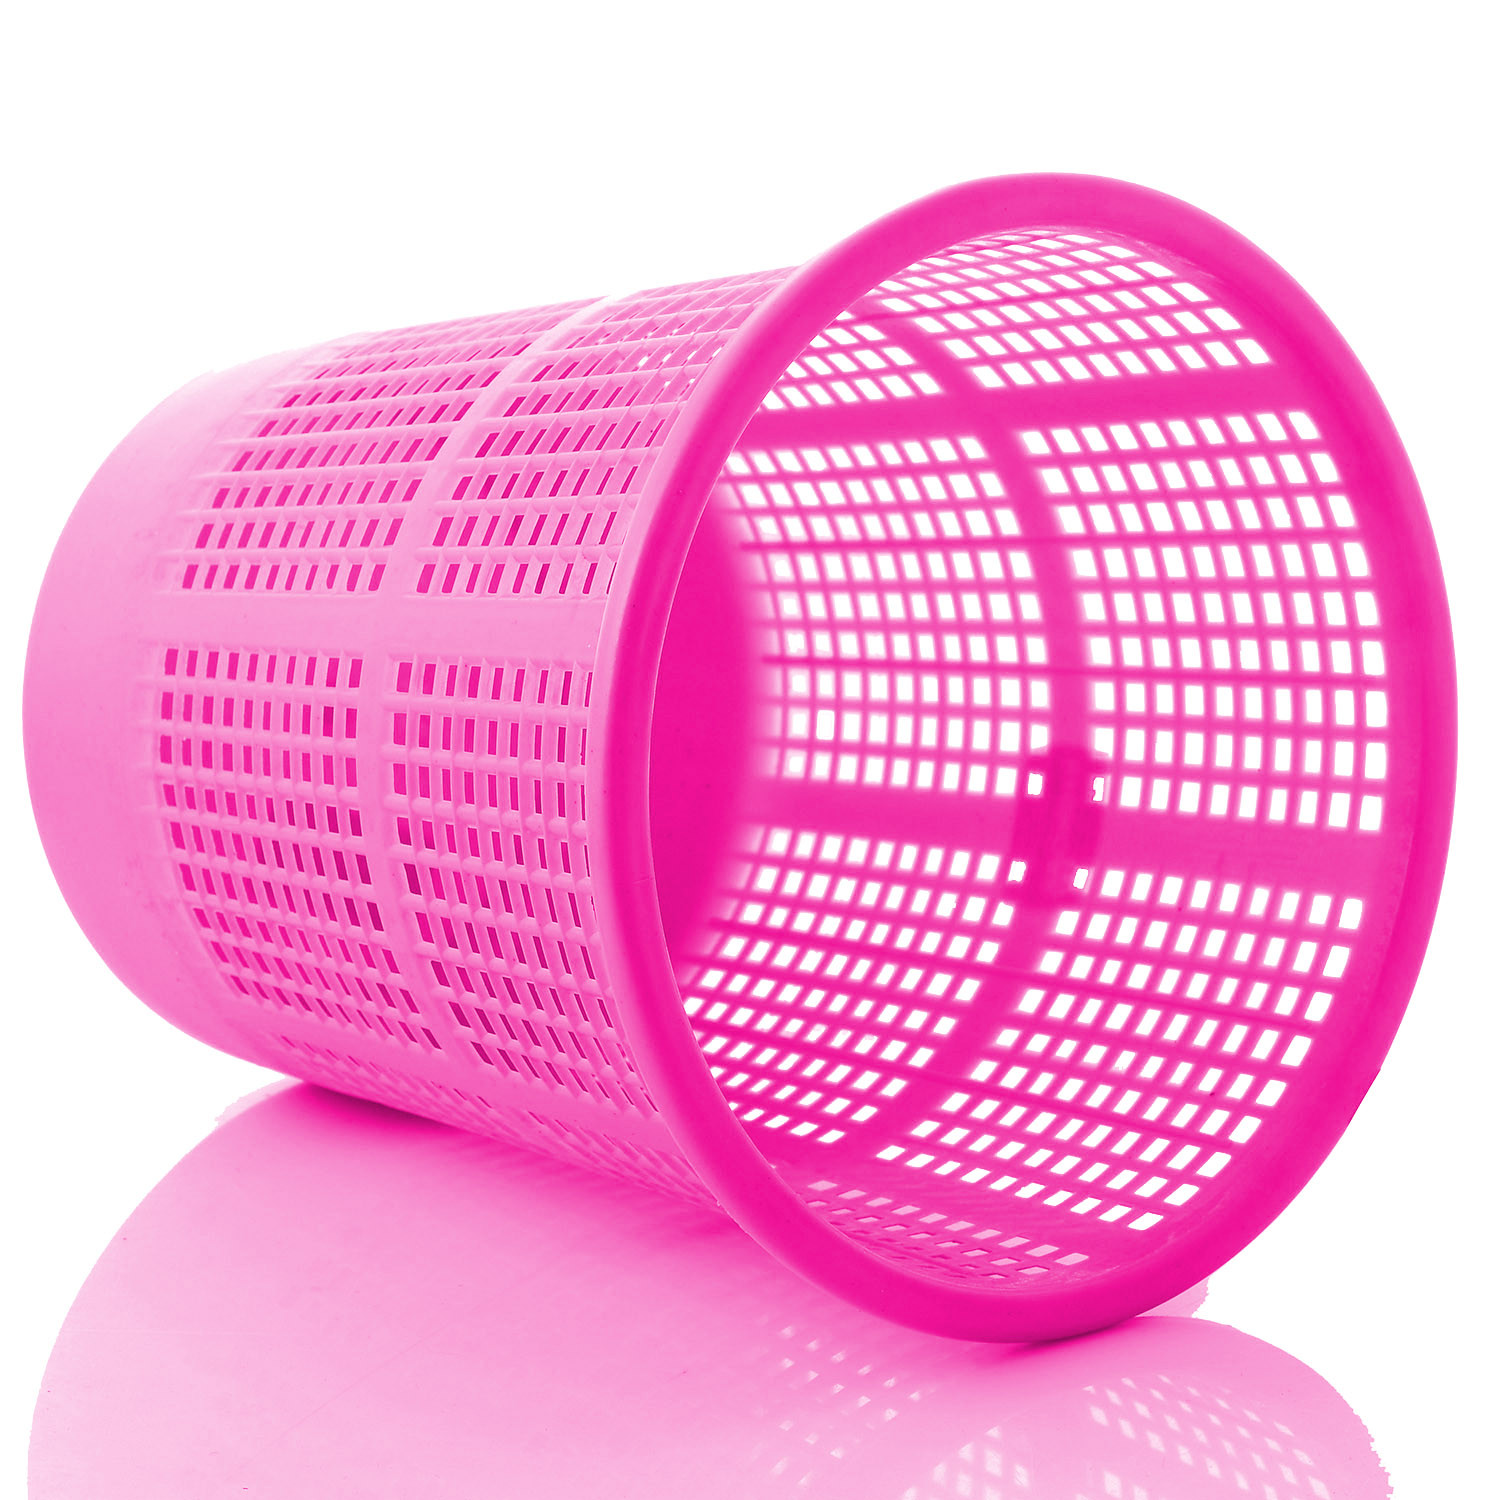 Kuber Industries Plastic Mesh Dustbin Garbage Bin for Office use, School, Bedroom,Kids Room, Home, Multi Purpose,5 Liters (Pink)-KUBMART240